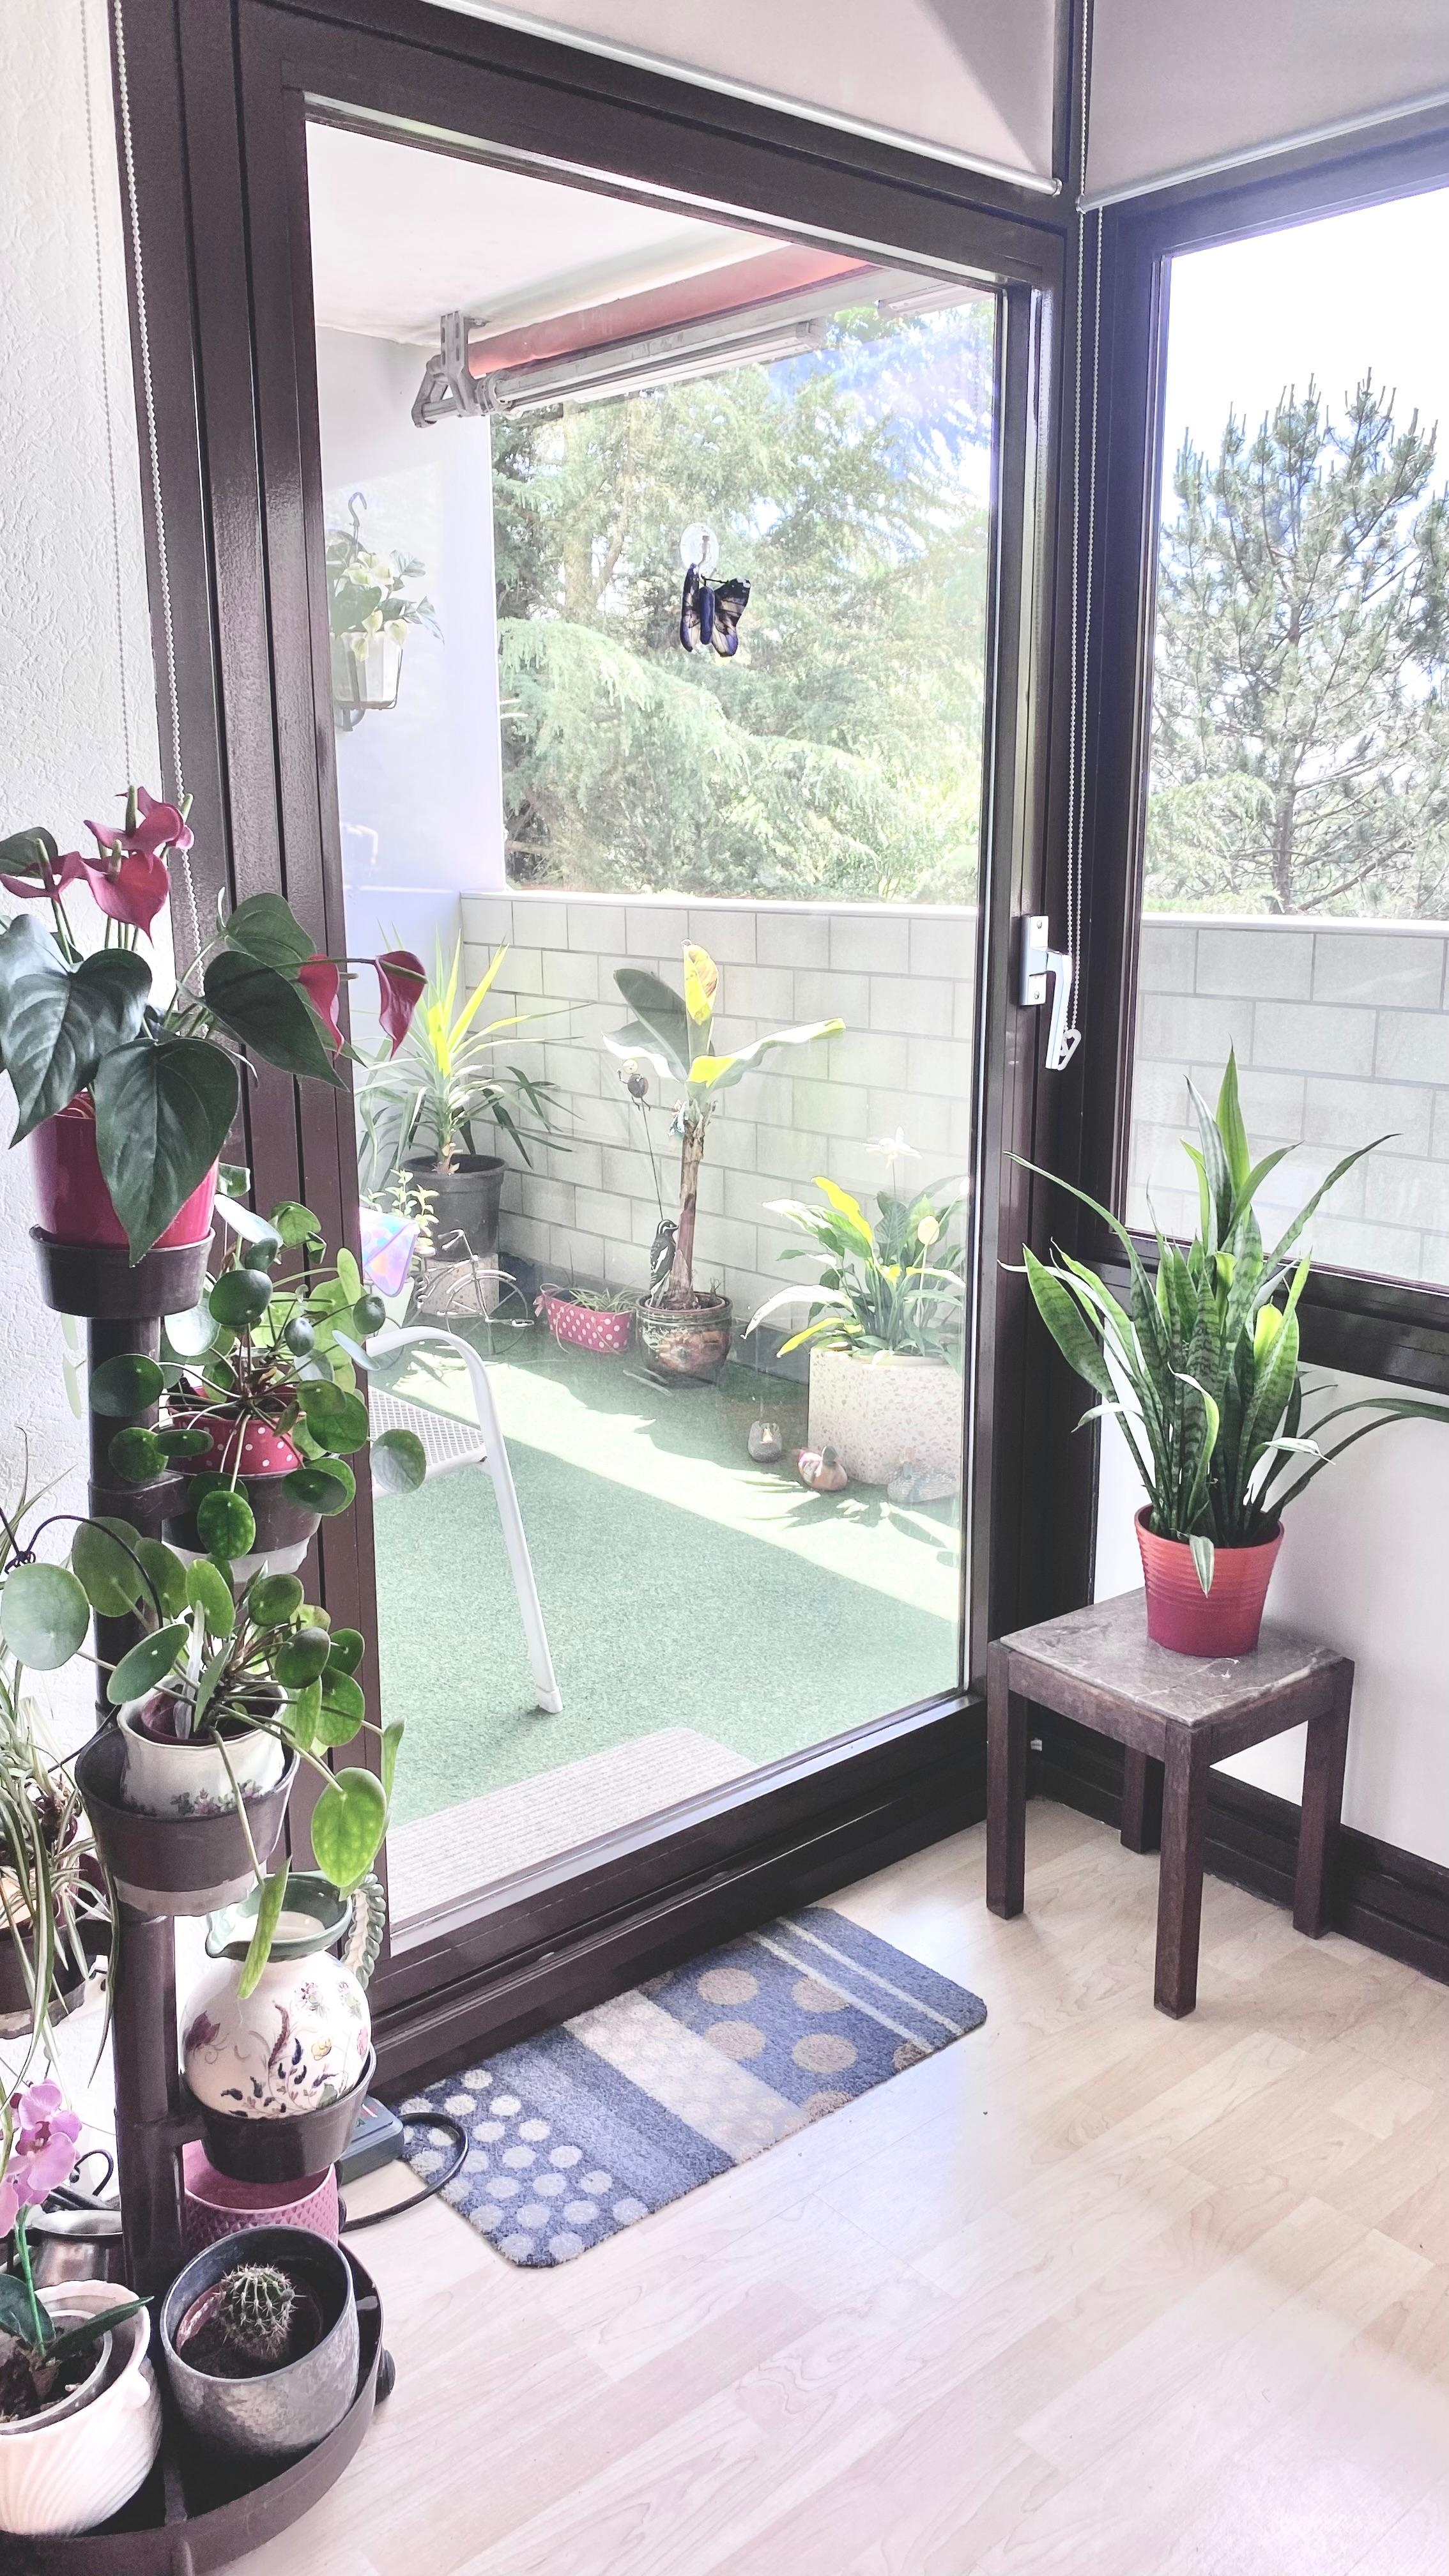 WOHNZIMMER
#livingchallenge #wohnzimmer 
Blick zum Balkon 😃 #pflanzenliebe
